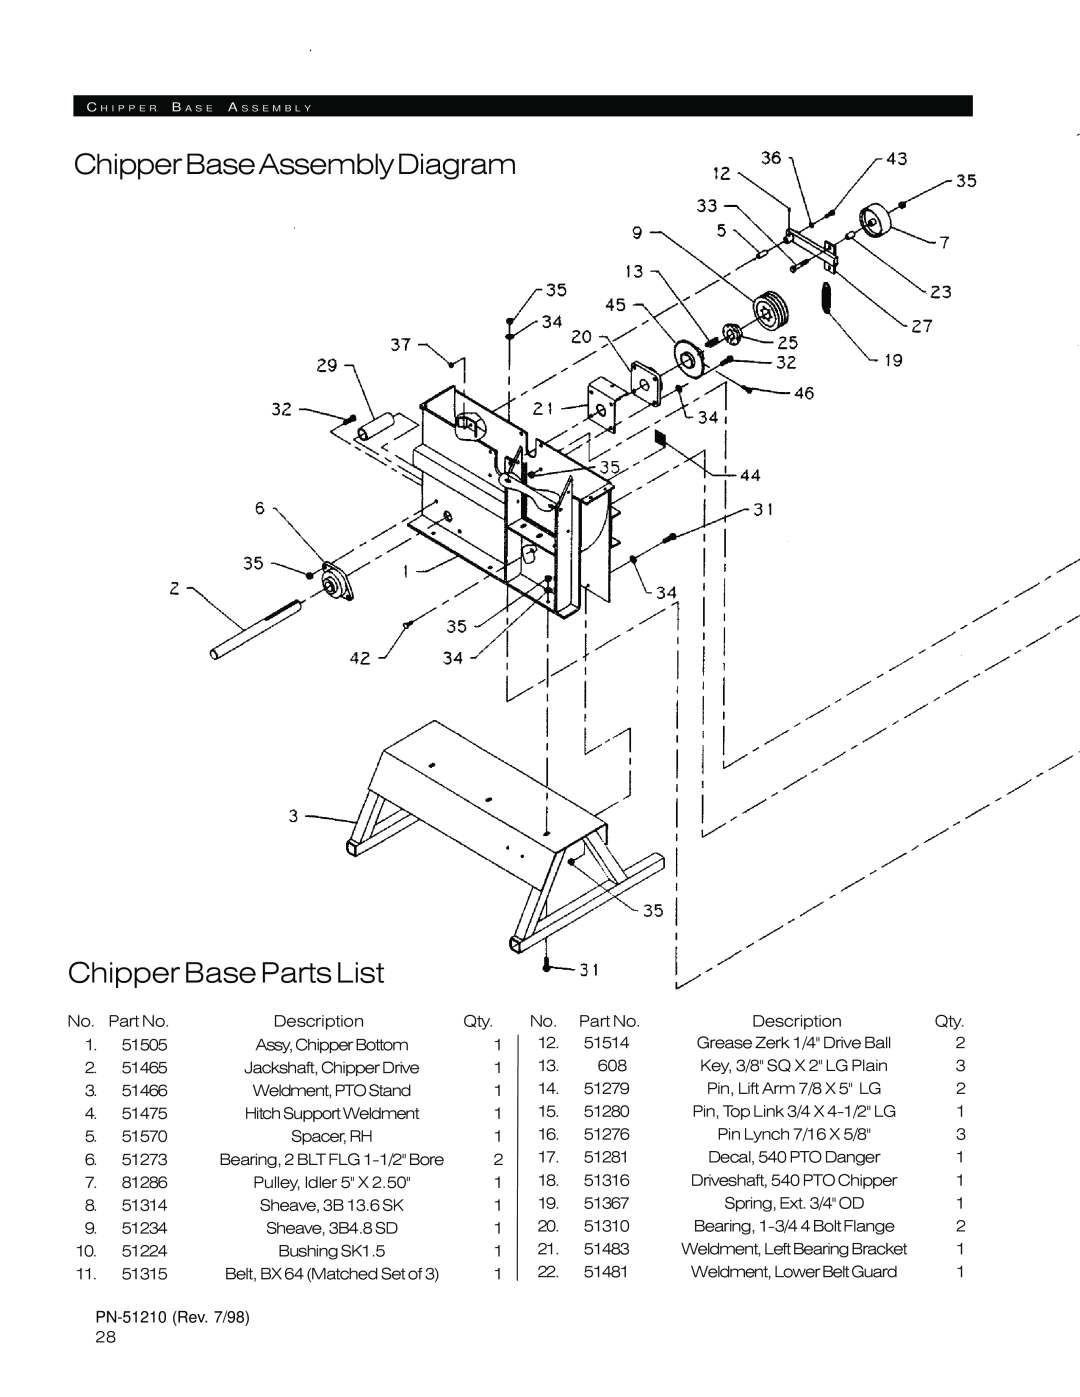 Woods Equipment 8000, 8100 ChipperBaseAssemblyDiagram Chipper Base Parts List, Spacer, RH, Bearing, 2 BLT FLG 1-1/2 Bore 